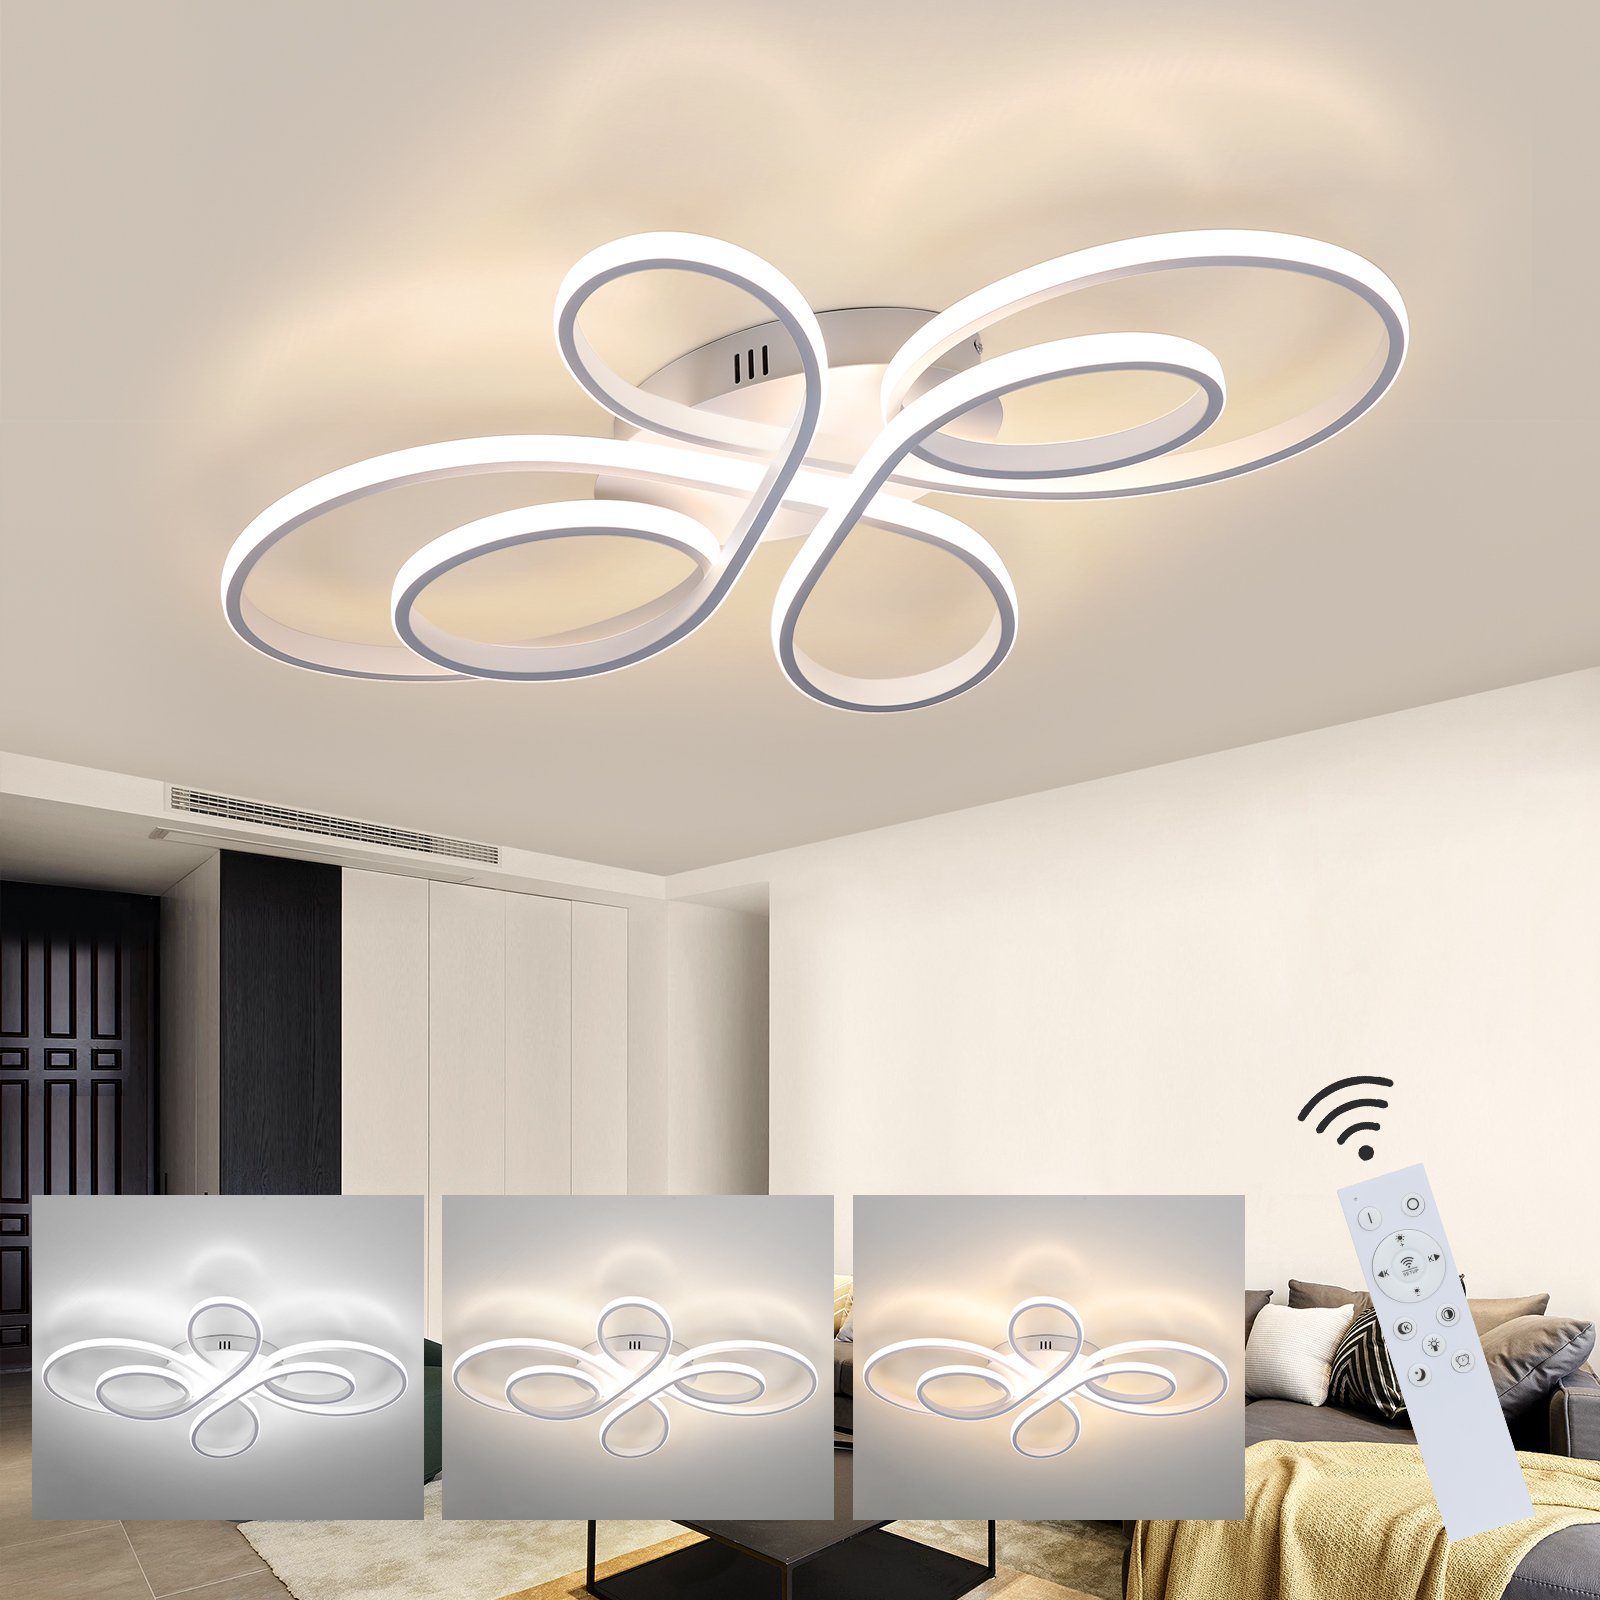 Nettlife LED Deckenleuchte Wohnzimmer Deckenlampe Modern Schlafzimmerlampe, Dimmbar mit Fernbedienung, LED fest integriert, Warmweiß, Neutralweiß, Kaltweiß, für Wohnzimmer Schlafzimmer Esszimmer Büro Küche, 78W, 80CM